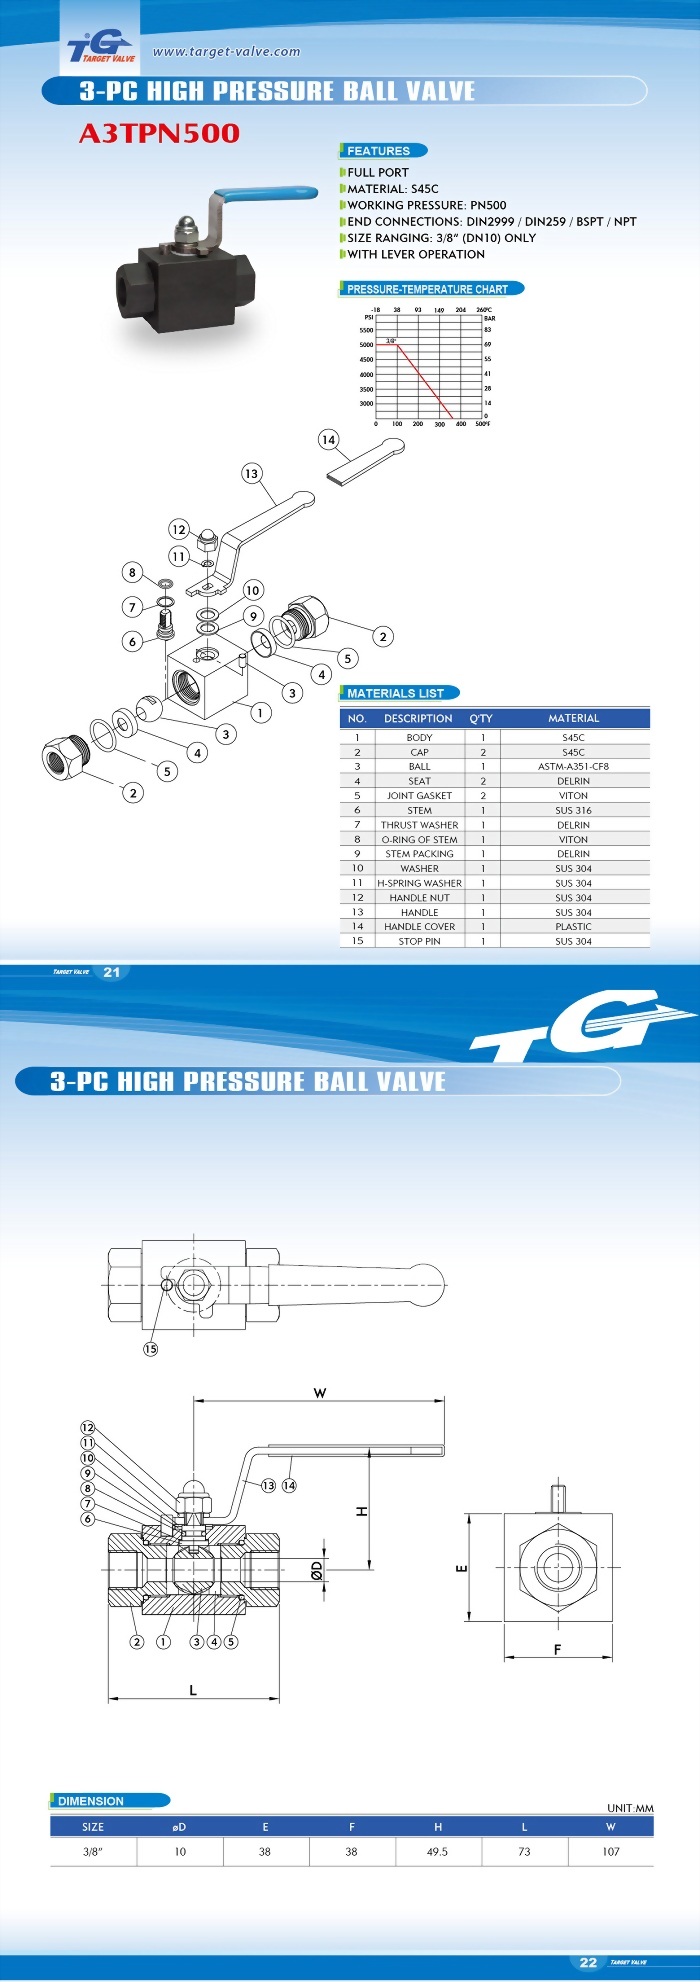 3 PC HIGH PRESSURE BALL VALVE - A3TPN500